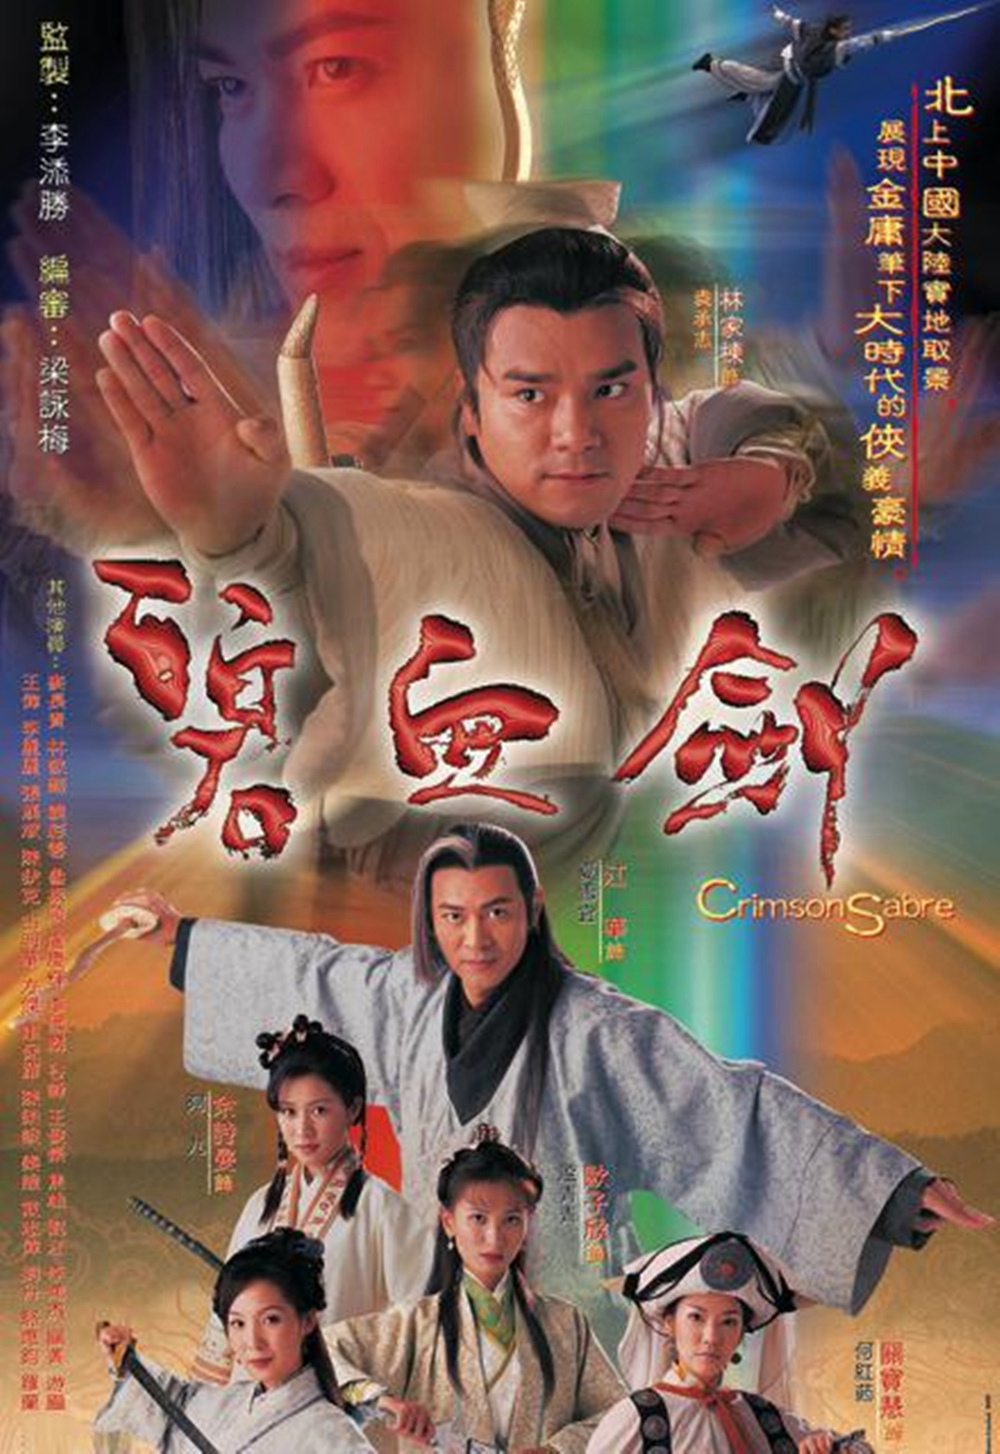 Poster Phim Bích Huyết Kiếm - Khí Phách Anh Hùng (Crimson Sabre)